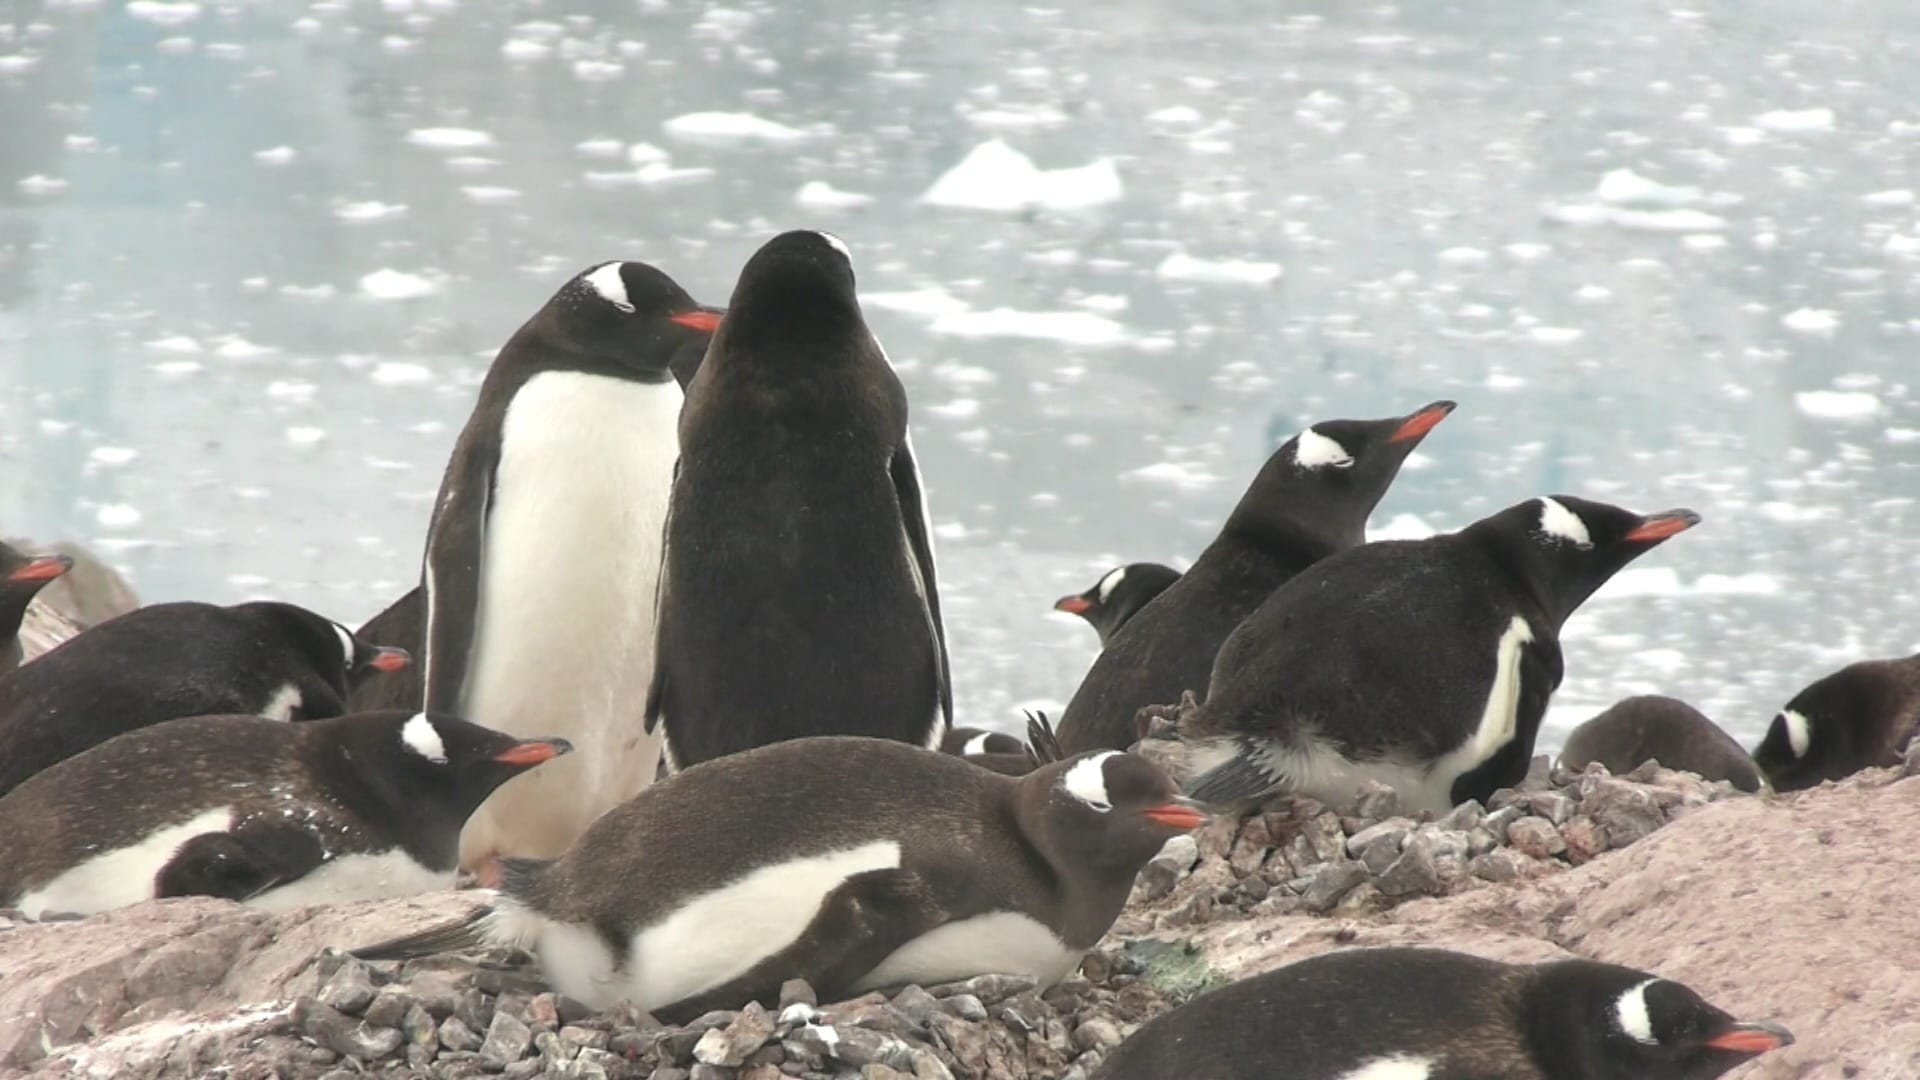 Pinguins, baleias e focas: conheça a vida selvagem da Antártica